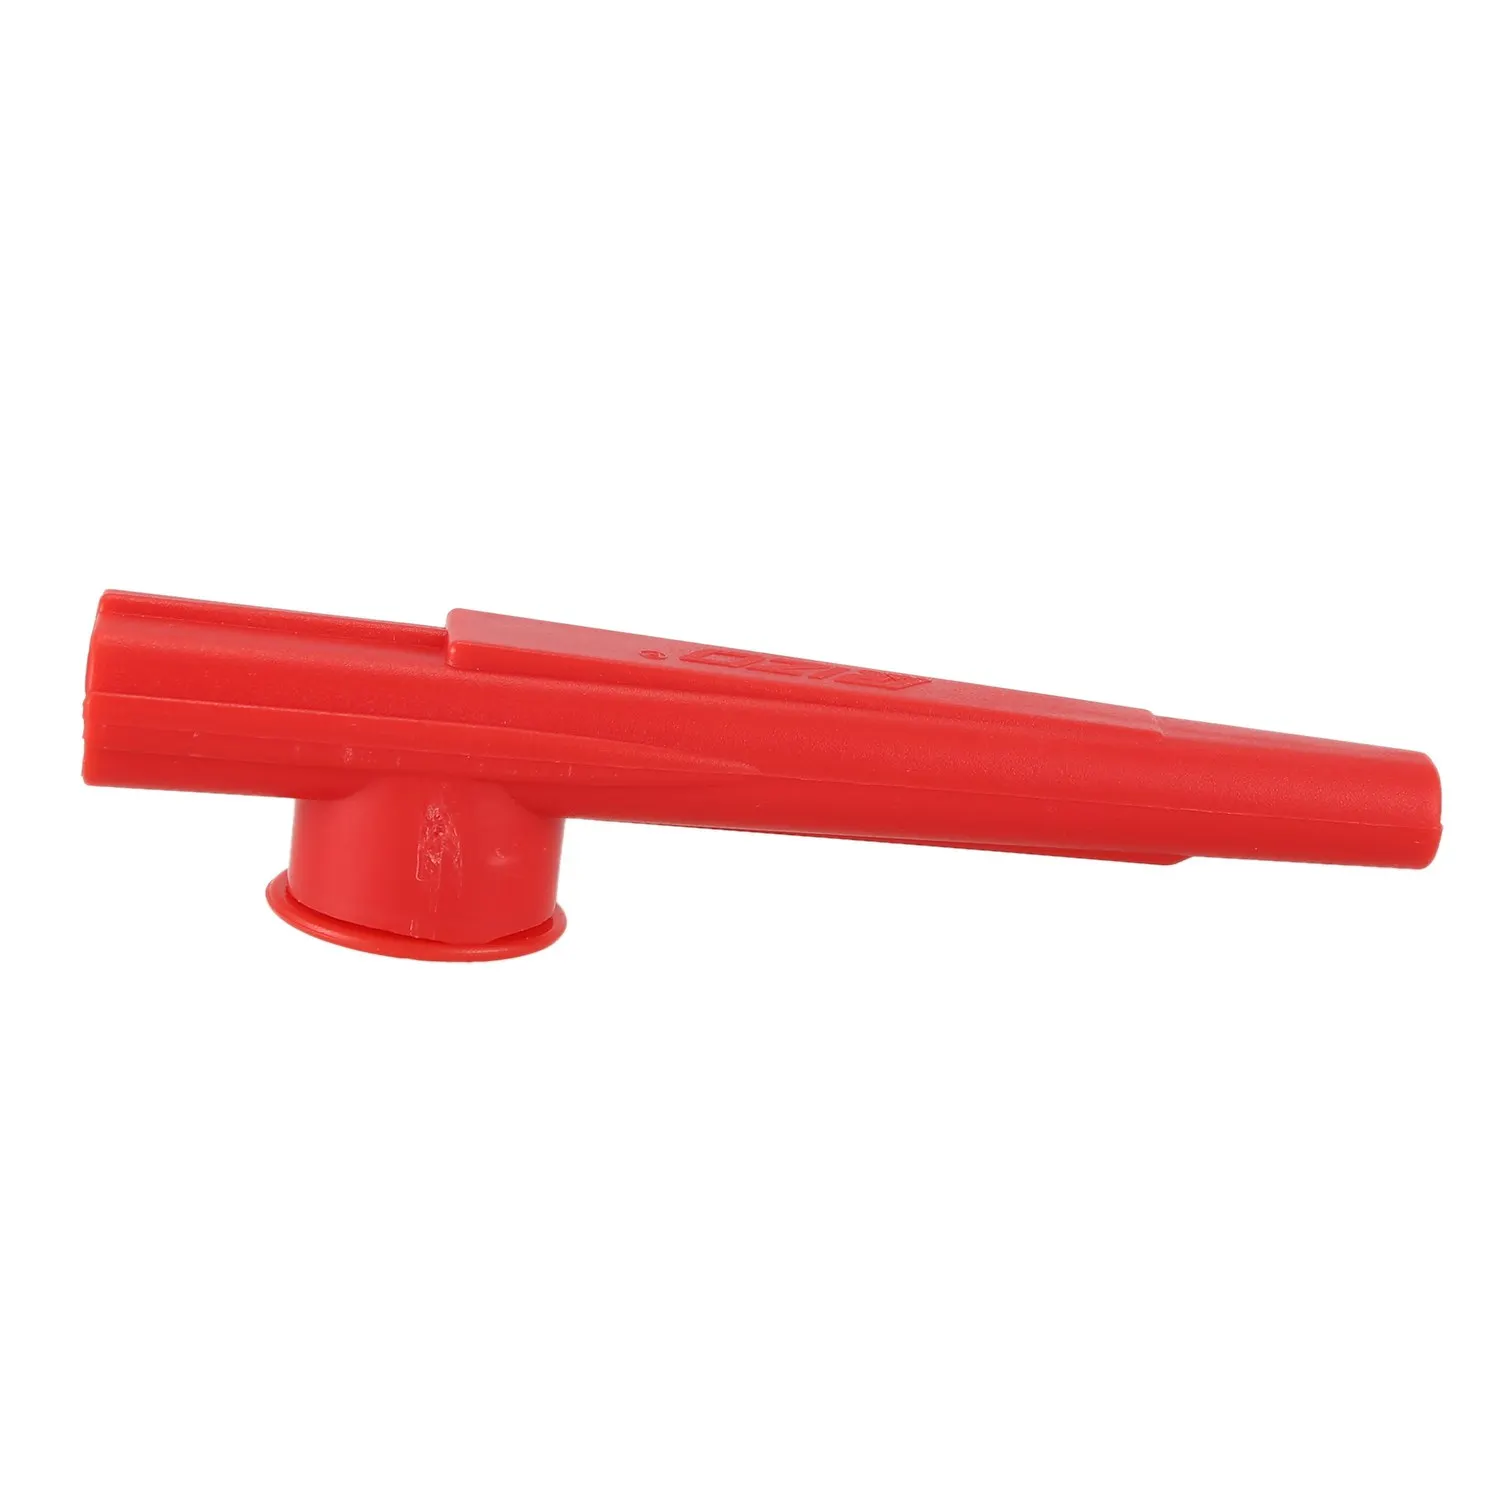 SEWS-детские игрушки kazoo пластик красного цвета, упаковка из 2